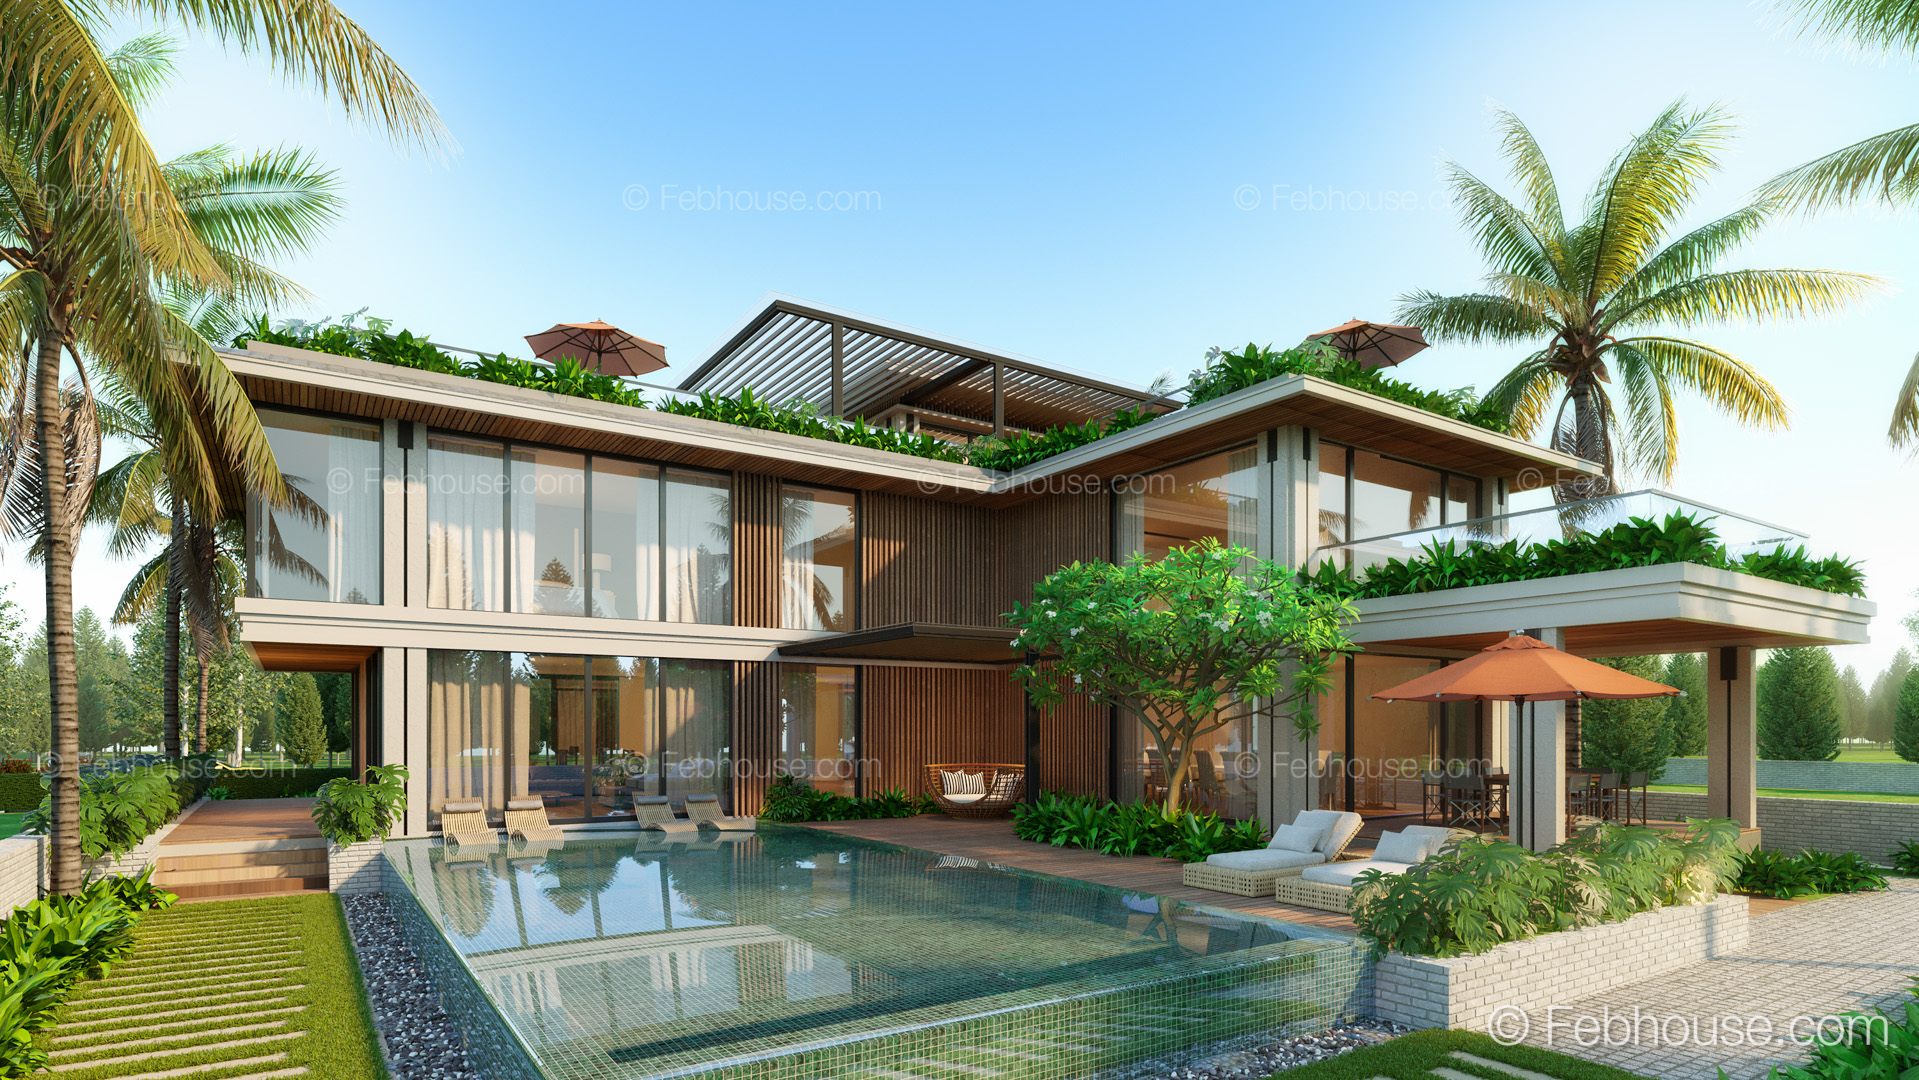 Thiết kế Biệt Thự tại Đà Nẵng SH-MAISON  nhà vườn ven biển phong cách đương đại 1660599475 3